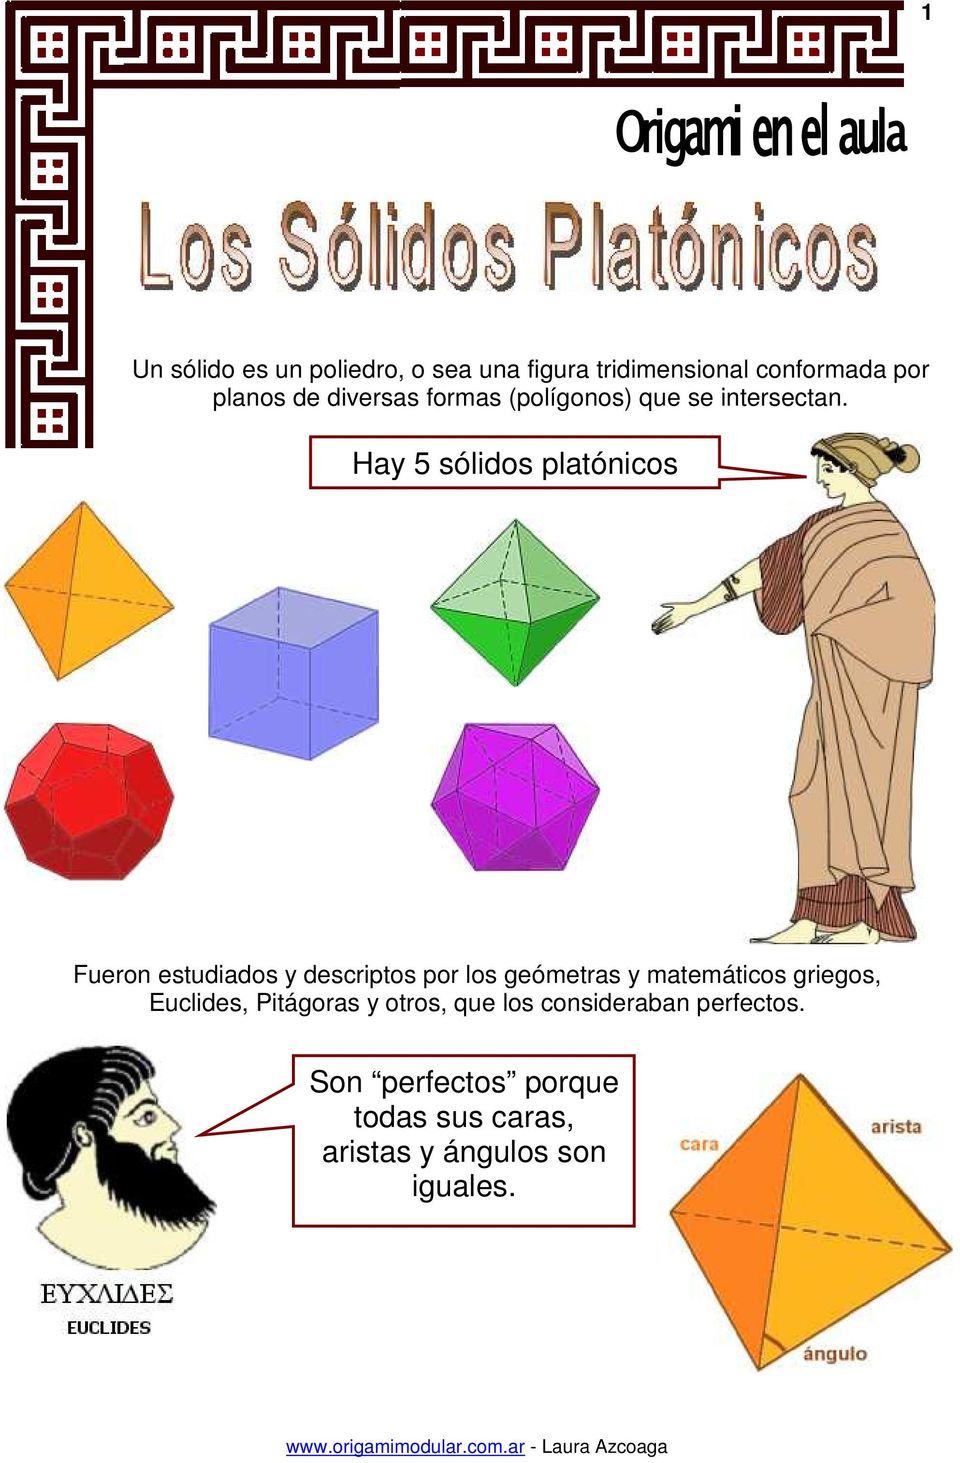 Hay 5 sólidos platónicos Fueron estudiados y descriptos por los geómetras y matemáticos